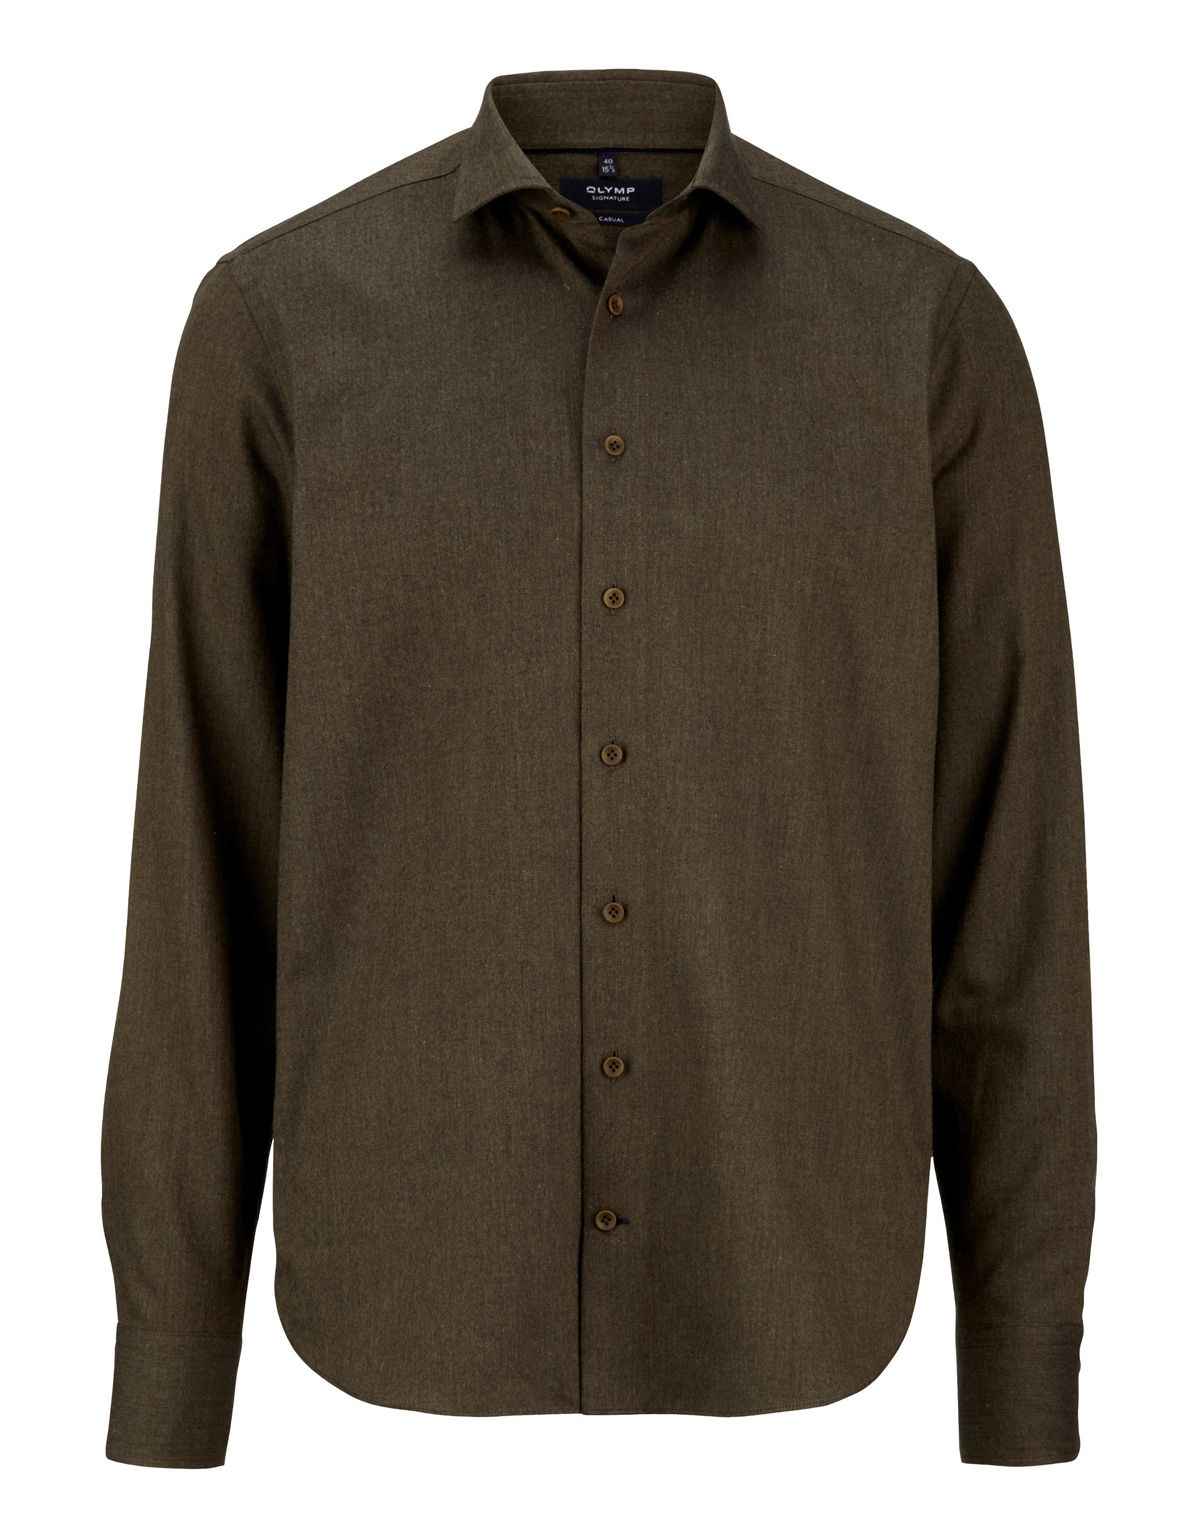 Рубашка фланелевая мужская Signature с кашемиром[ХАКИ]